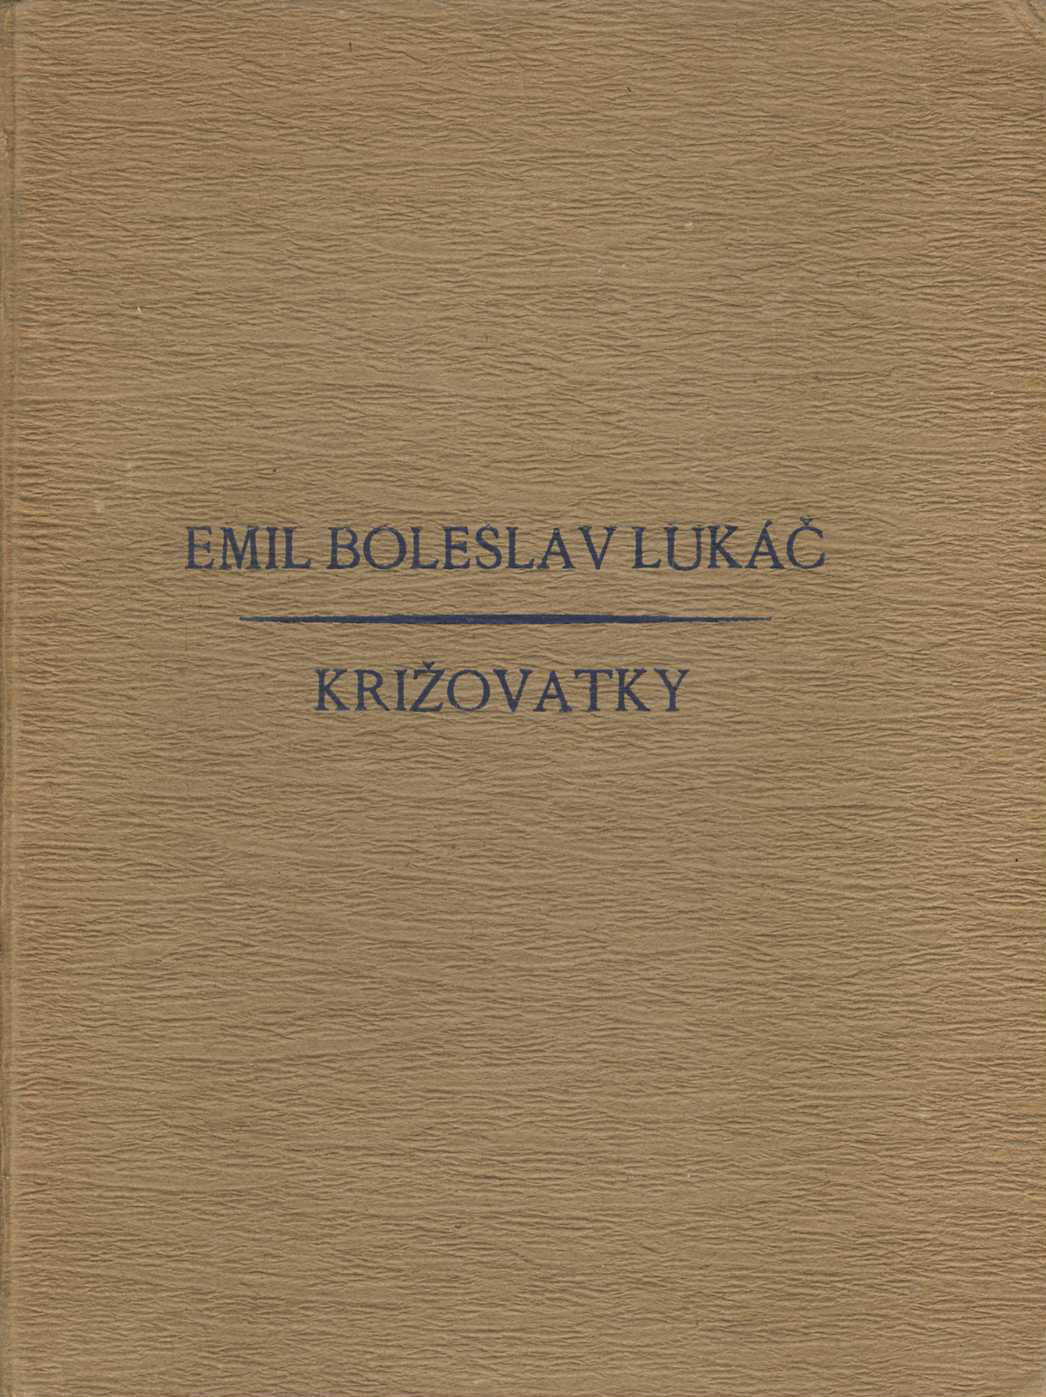 Križovatky (Emil Boleslav Lukáč)